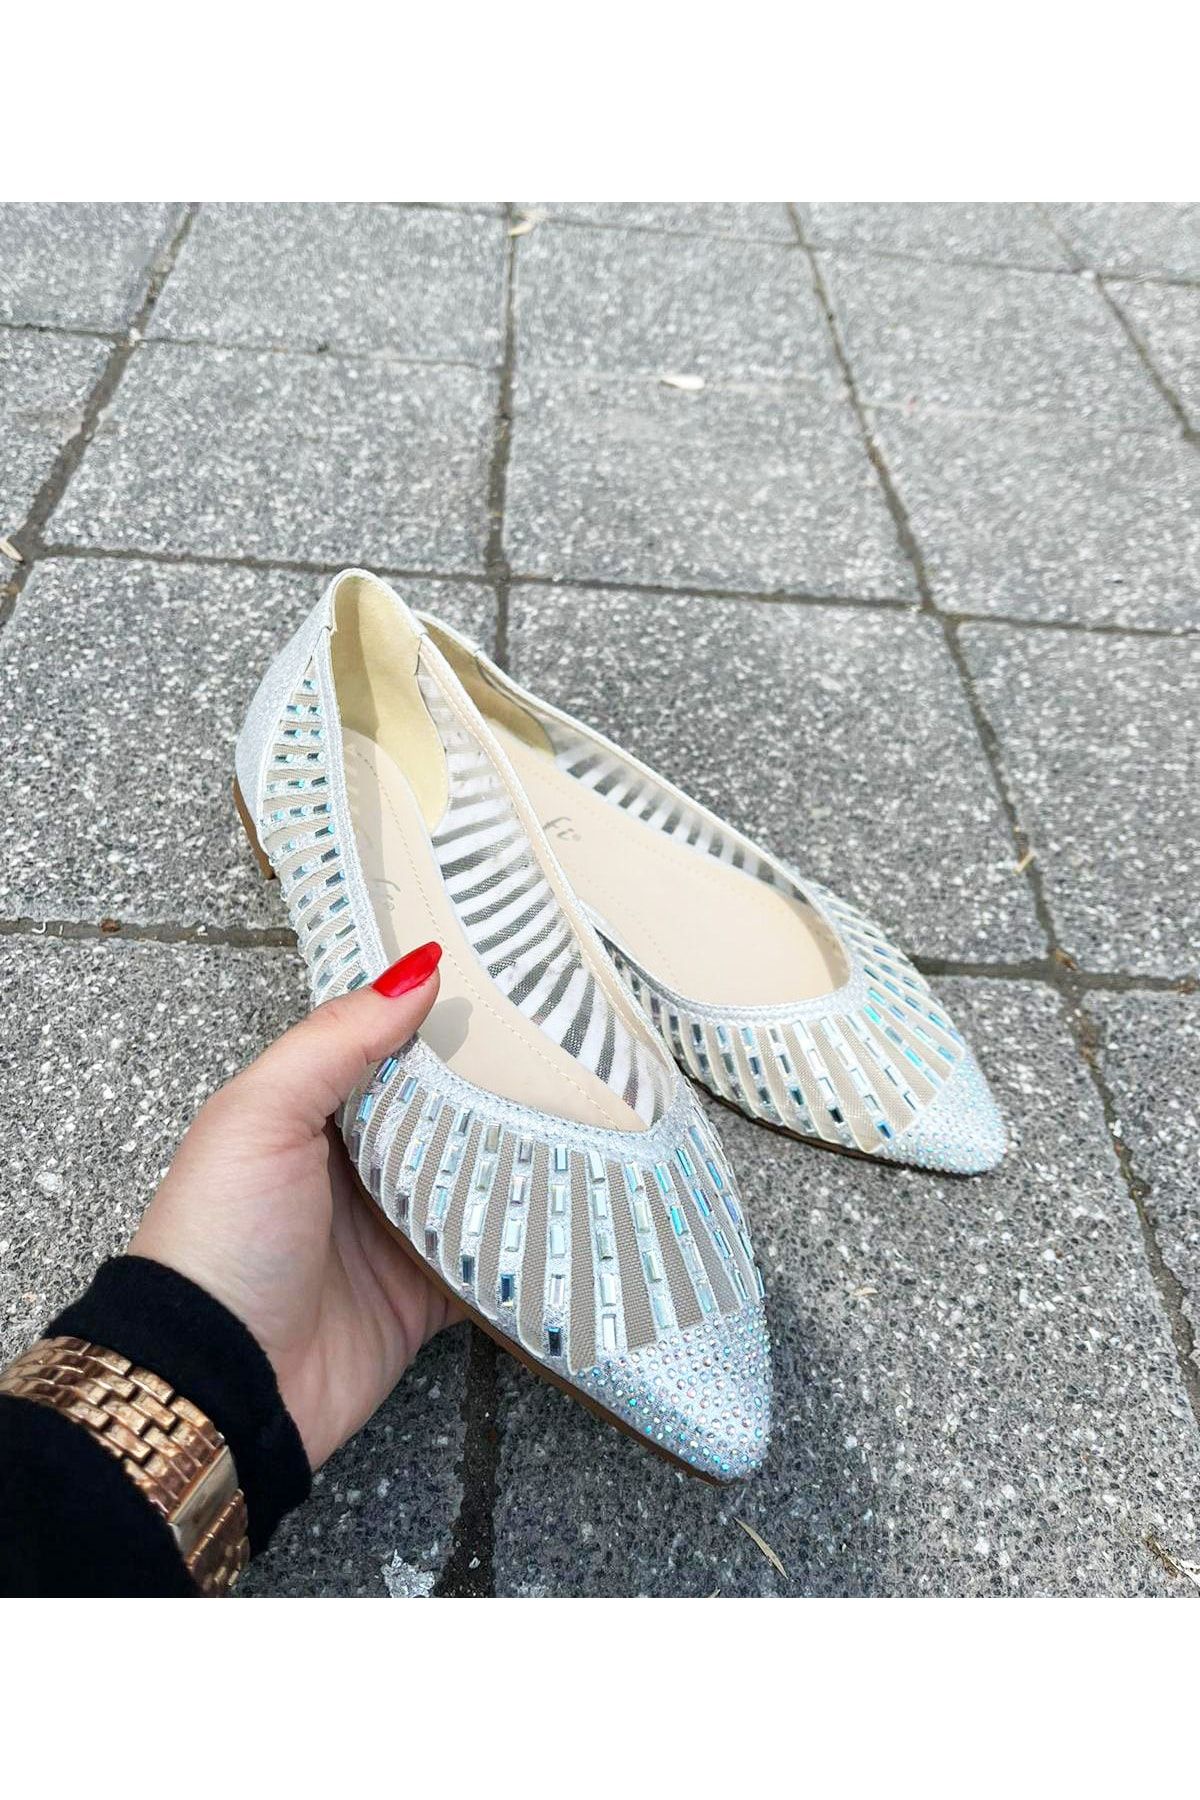 Afilli Kadın Gümüş Taşlı Tüllü Şık Parlak Düz Taban Sivri Burun Abiye Günlük Babet Ayakkabı